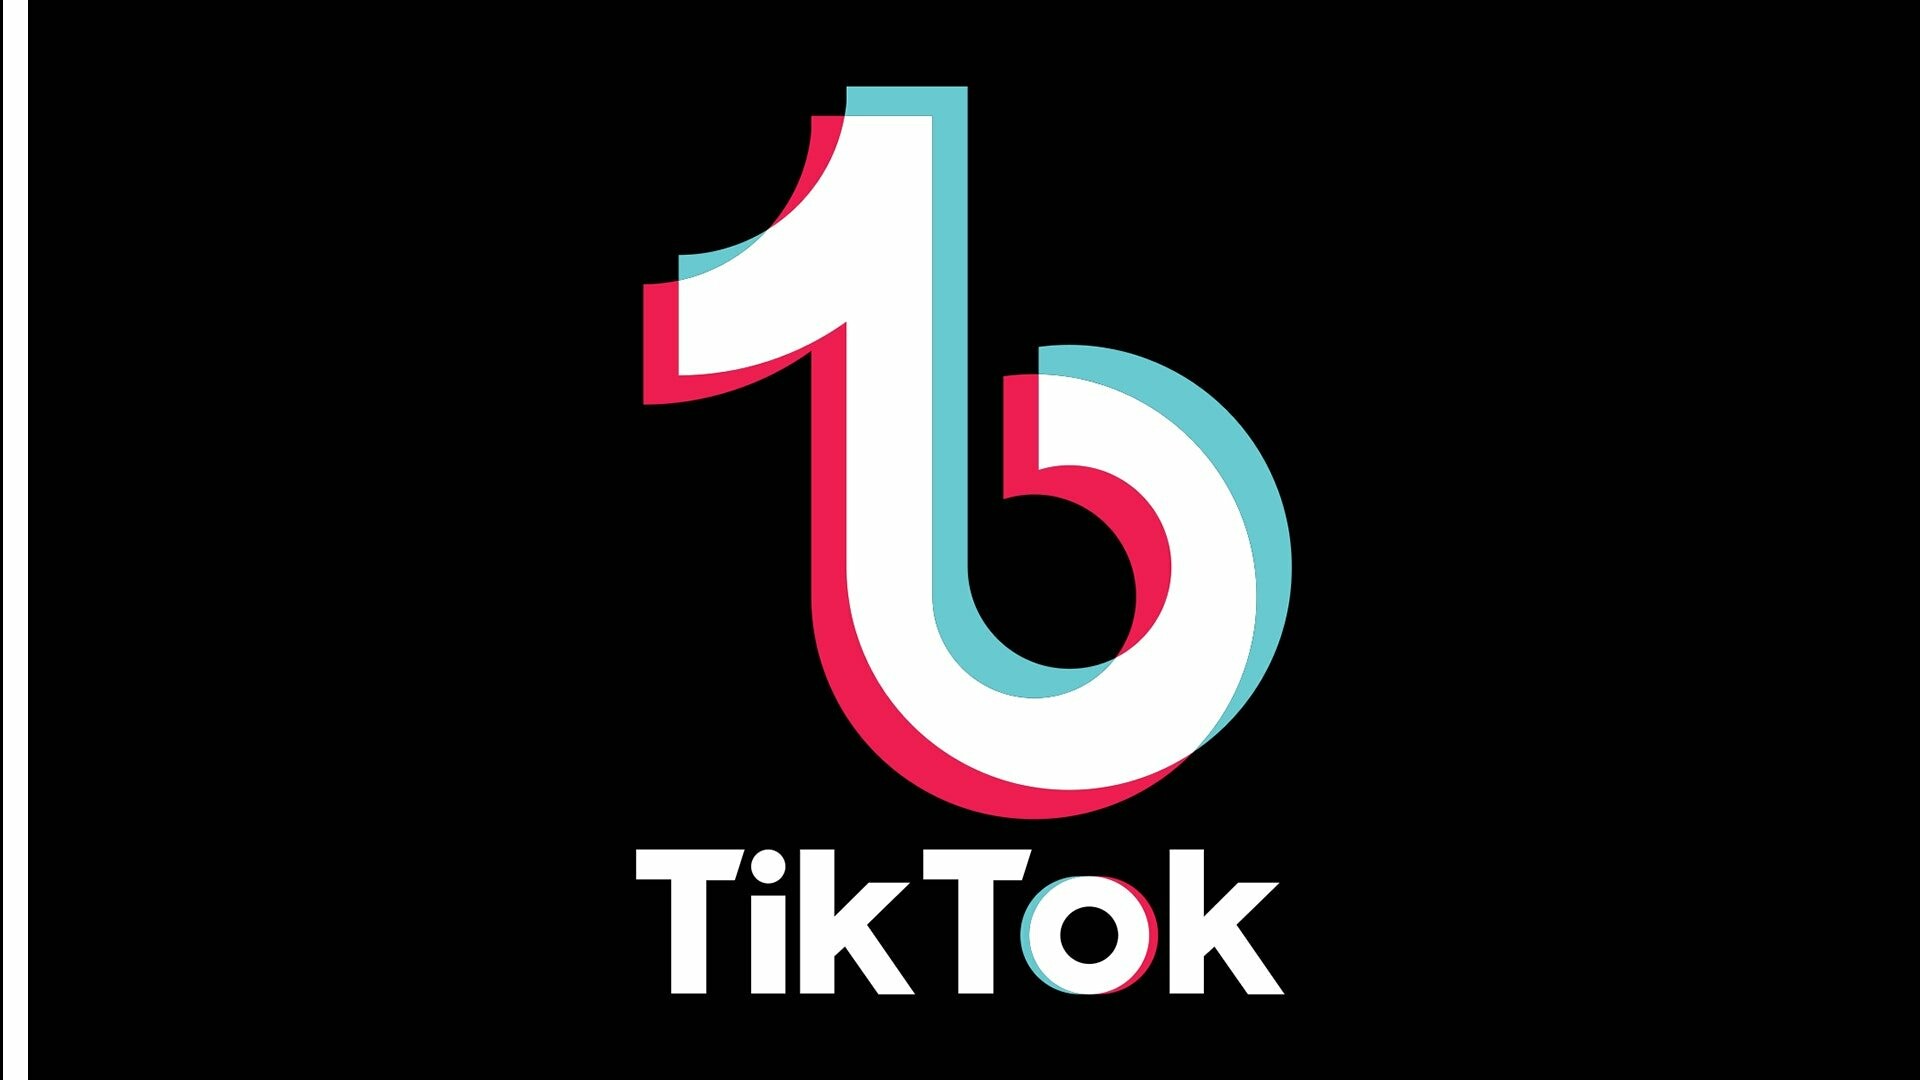 TikTok: A user-friendly social media platform, ByteDance. 1920x1080 Full HD Wallpaper.